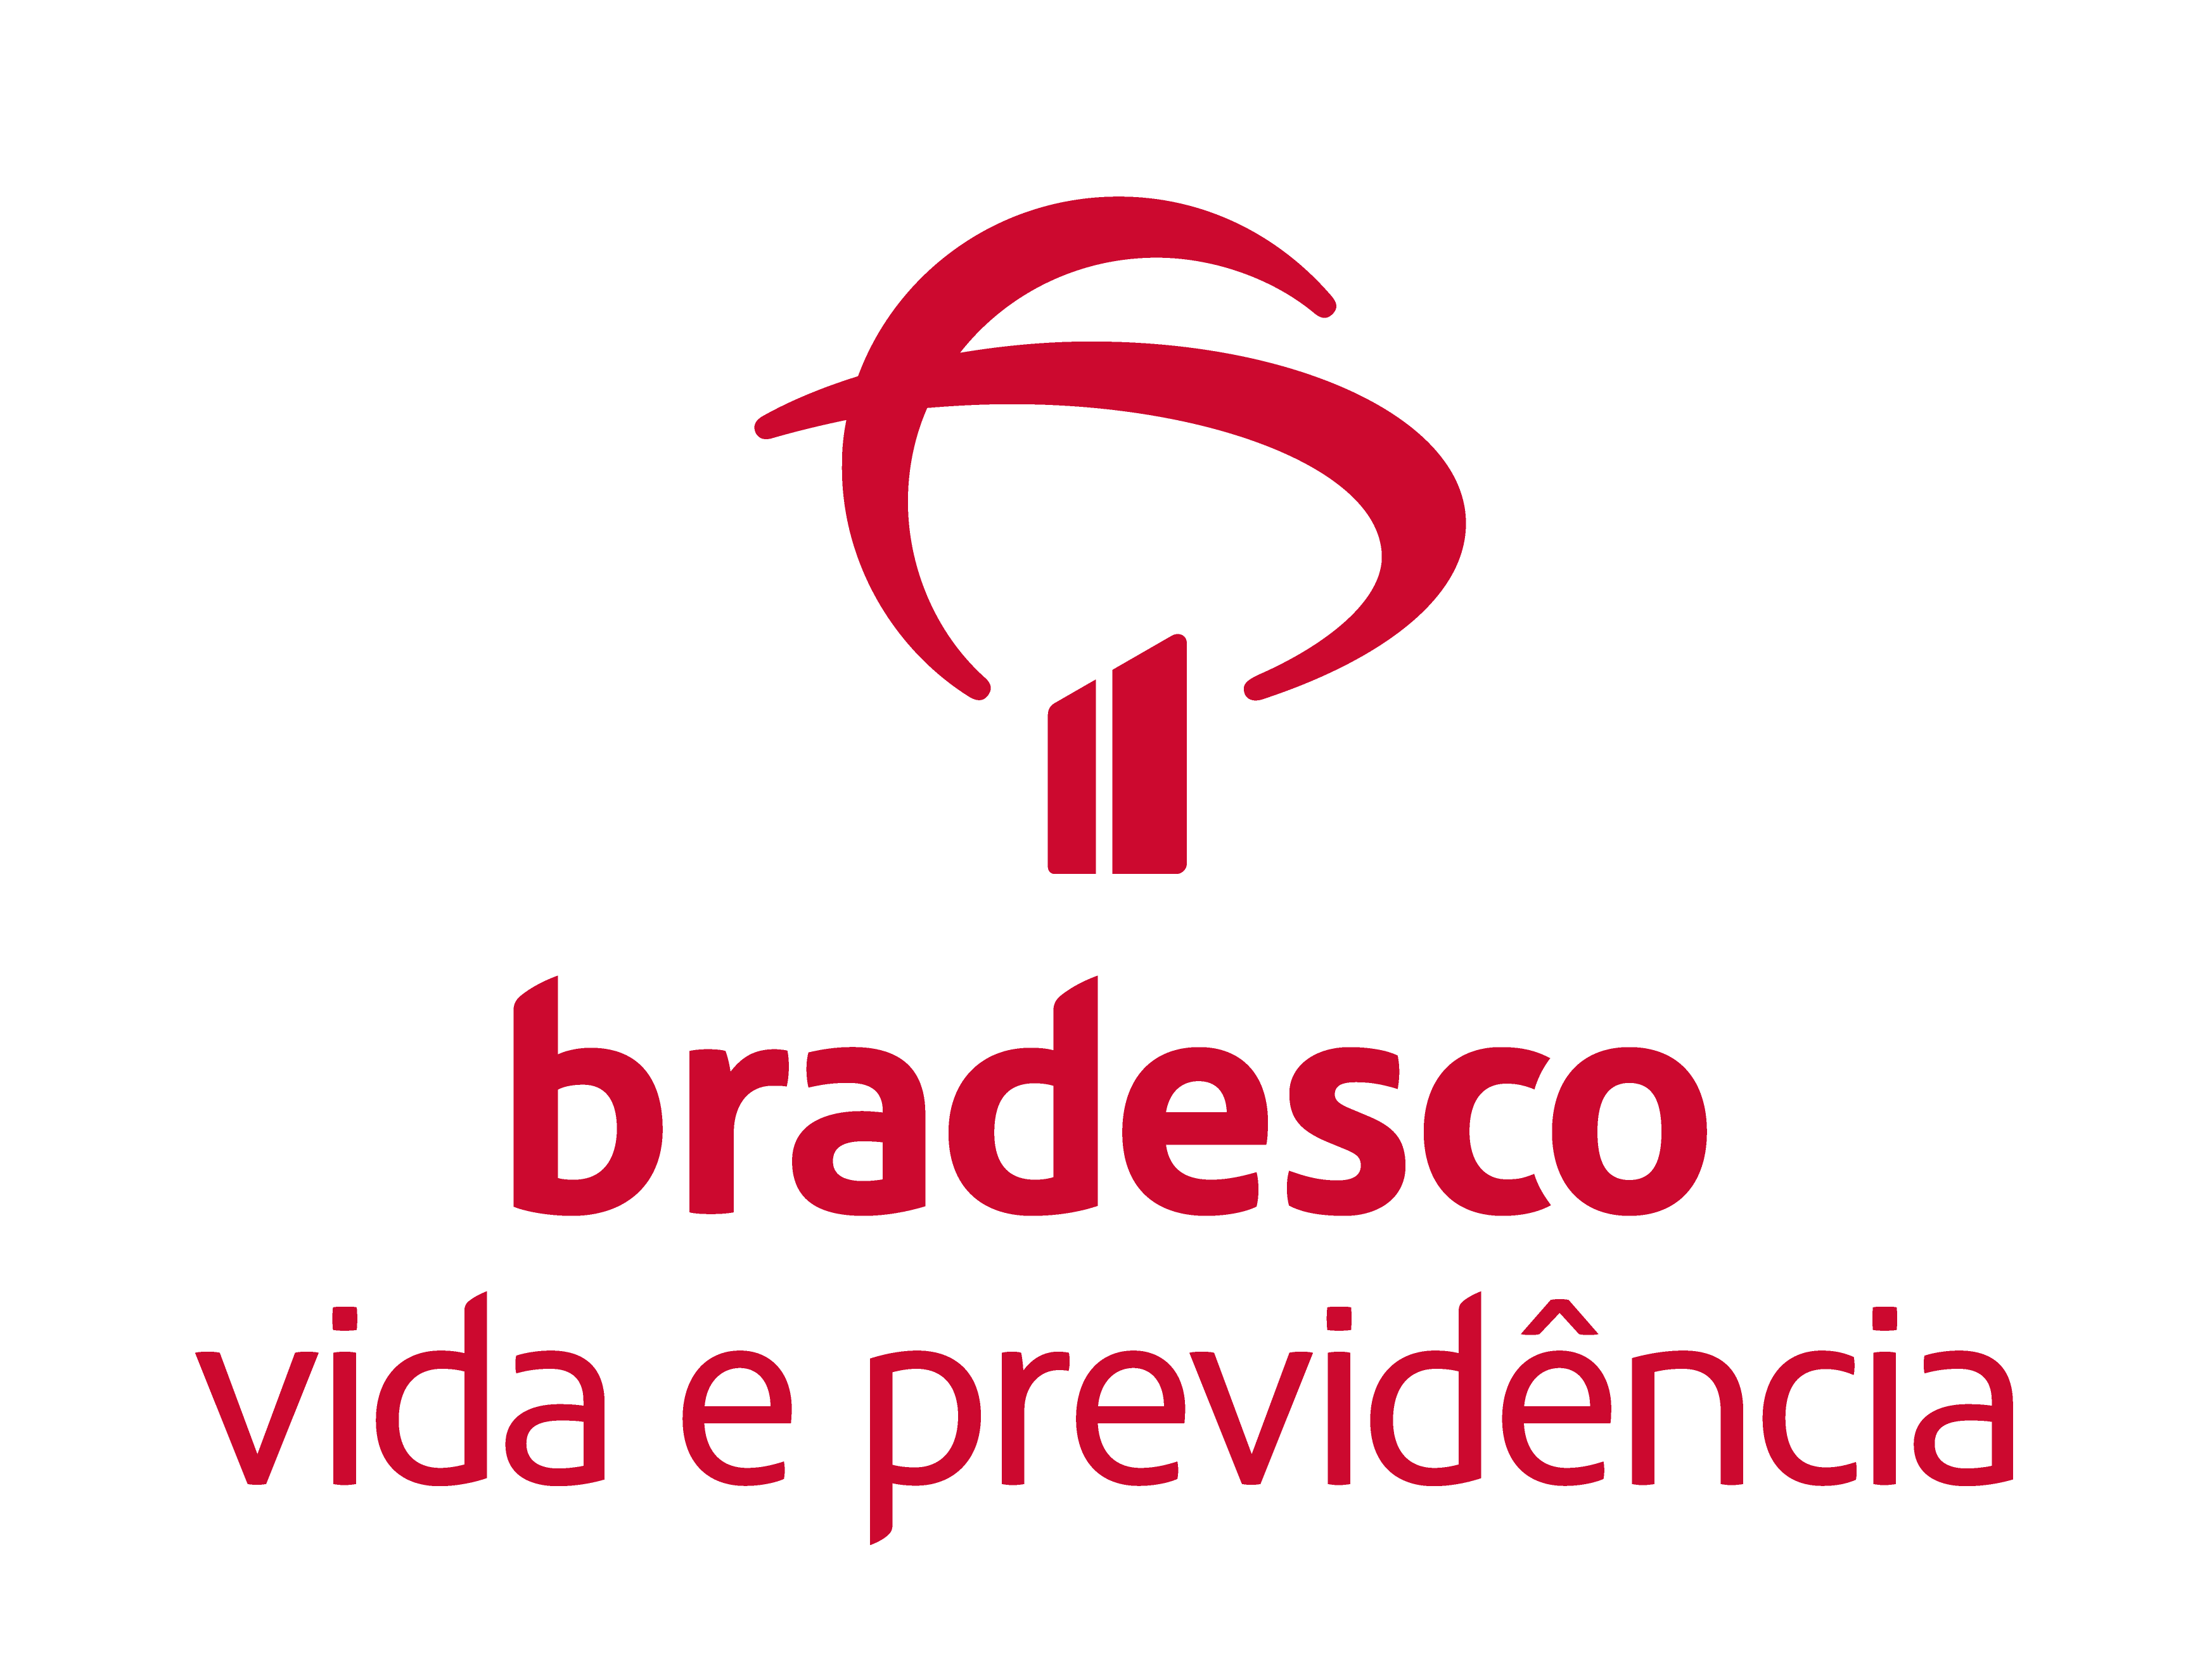 BRADESCO VIDA